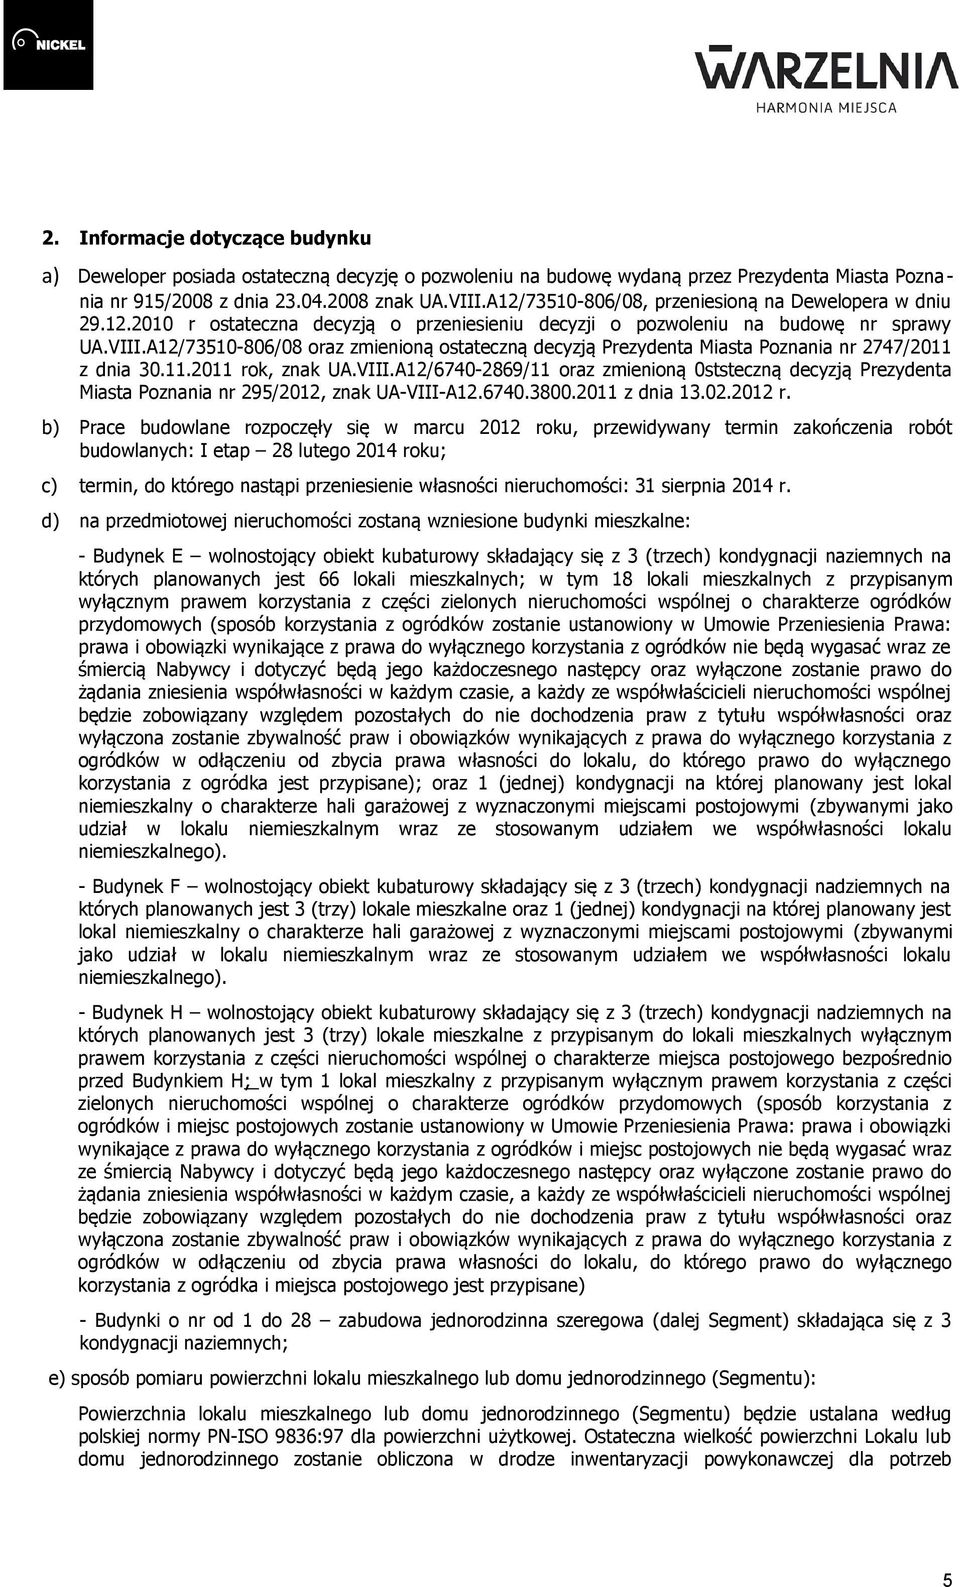 A12/73510-806/08 oraz zmienioną ostateczną decyzją Prezydenta Miasta Poznania nr 2747/2011 z dnia 30.11.2011 rok, znak UA.VIII.